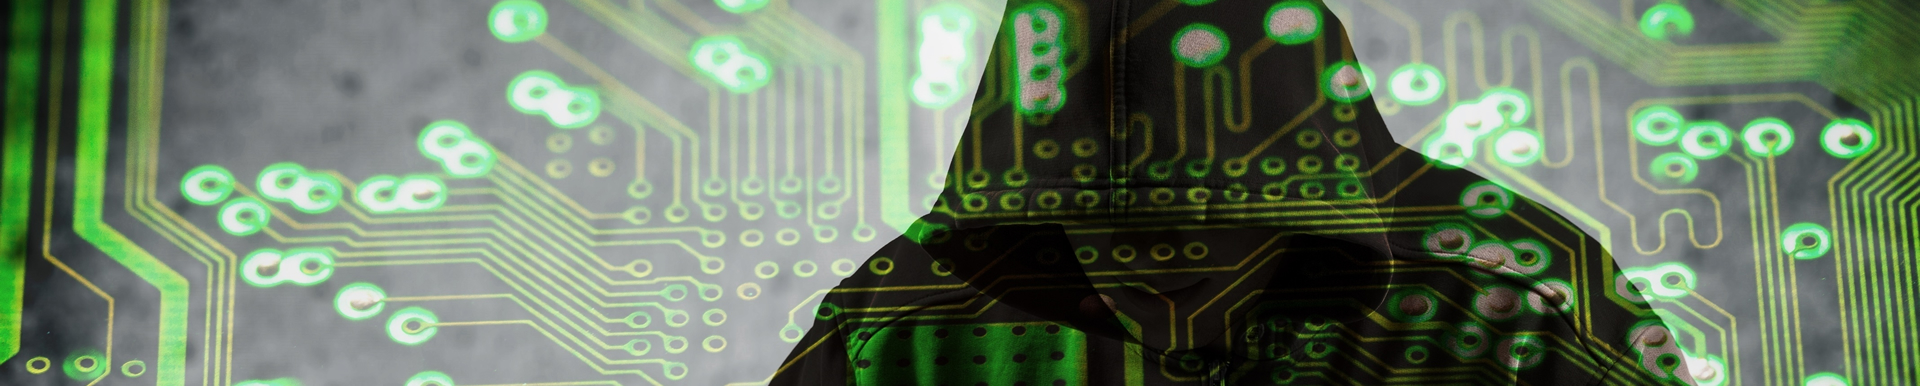 Cybersecurity & Cloud: Meet the Geek! - Luigi, SOC analyst